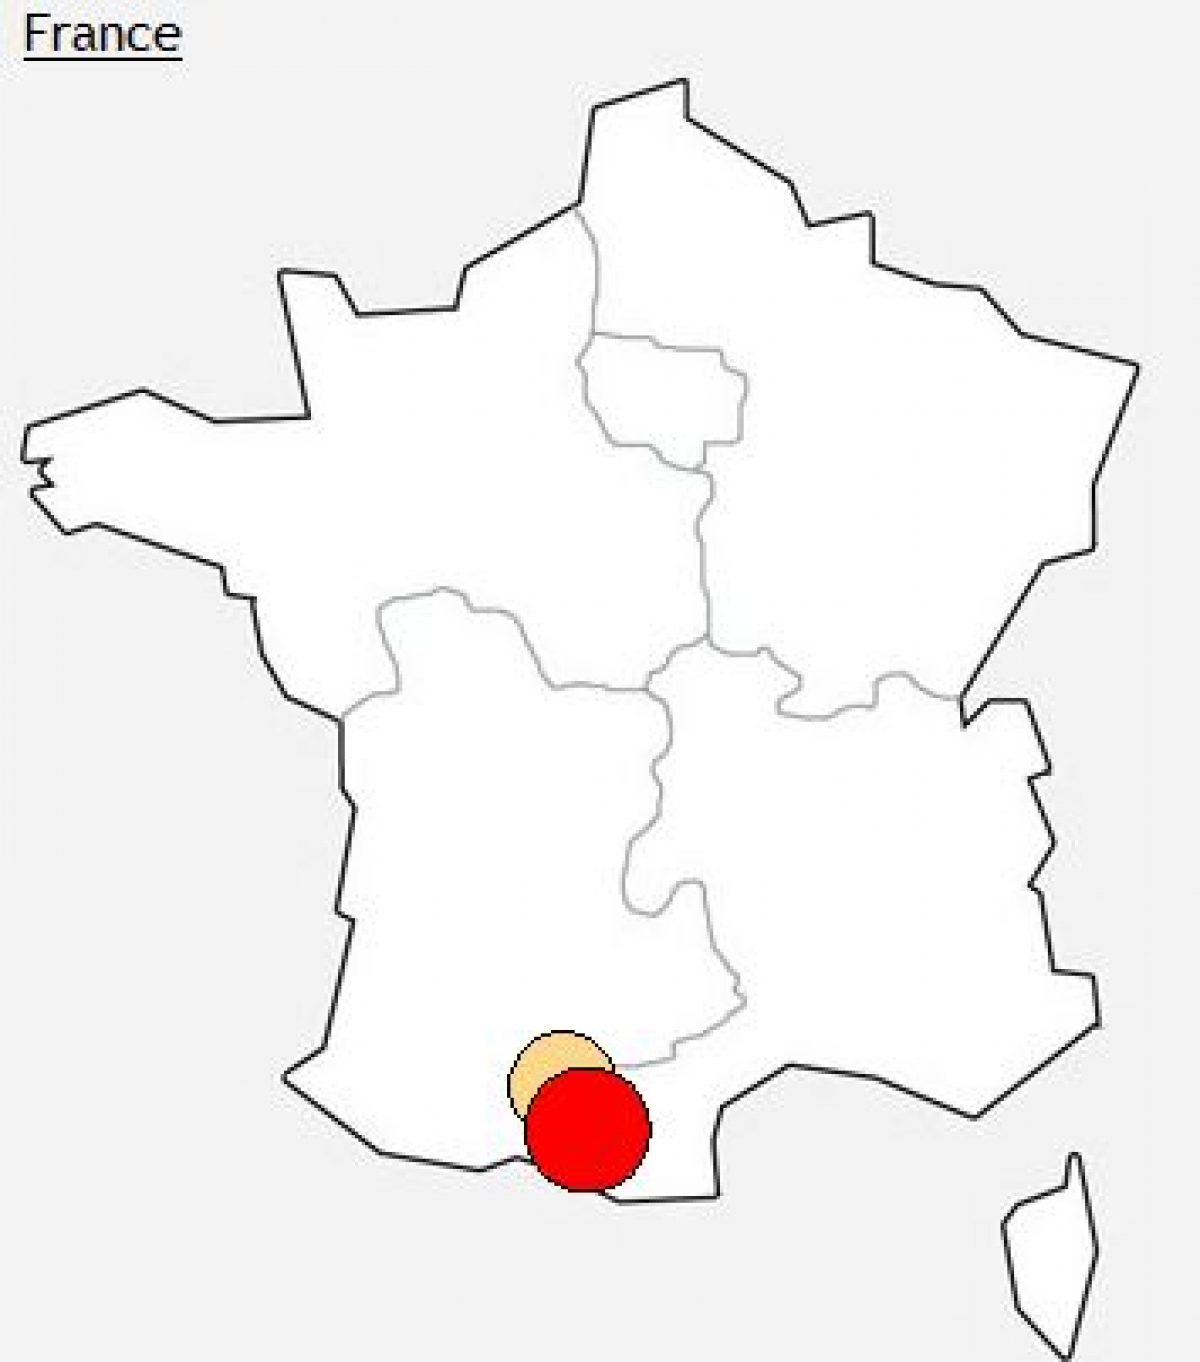 [MAJ] Incident sur certains DSLAM en Midi Pyrénées